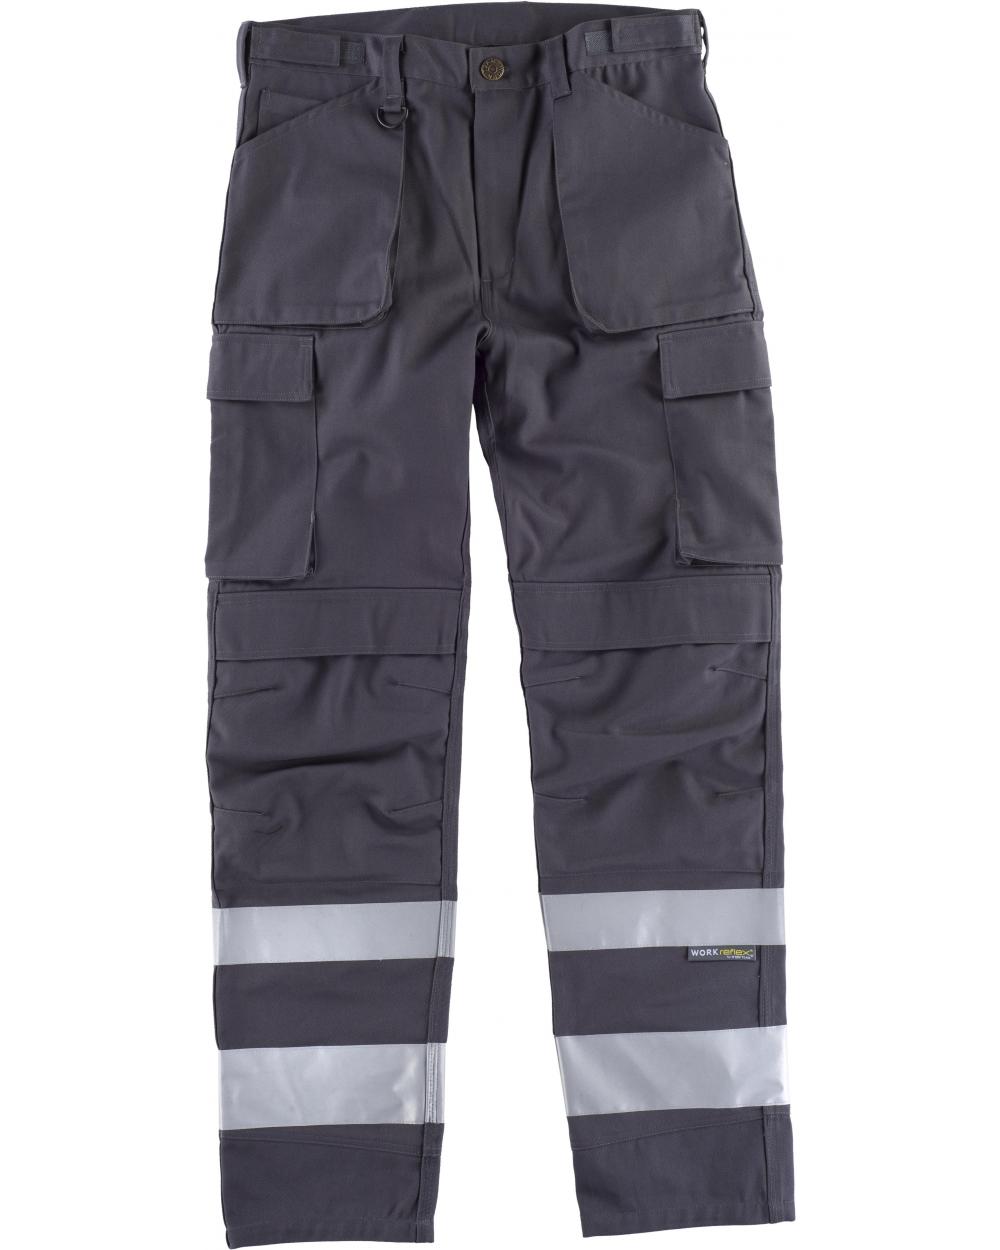 Comprar Pantalon con proteccion rodilleras C2911 Gris workteam delante